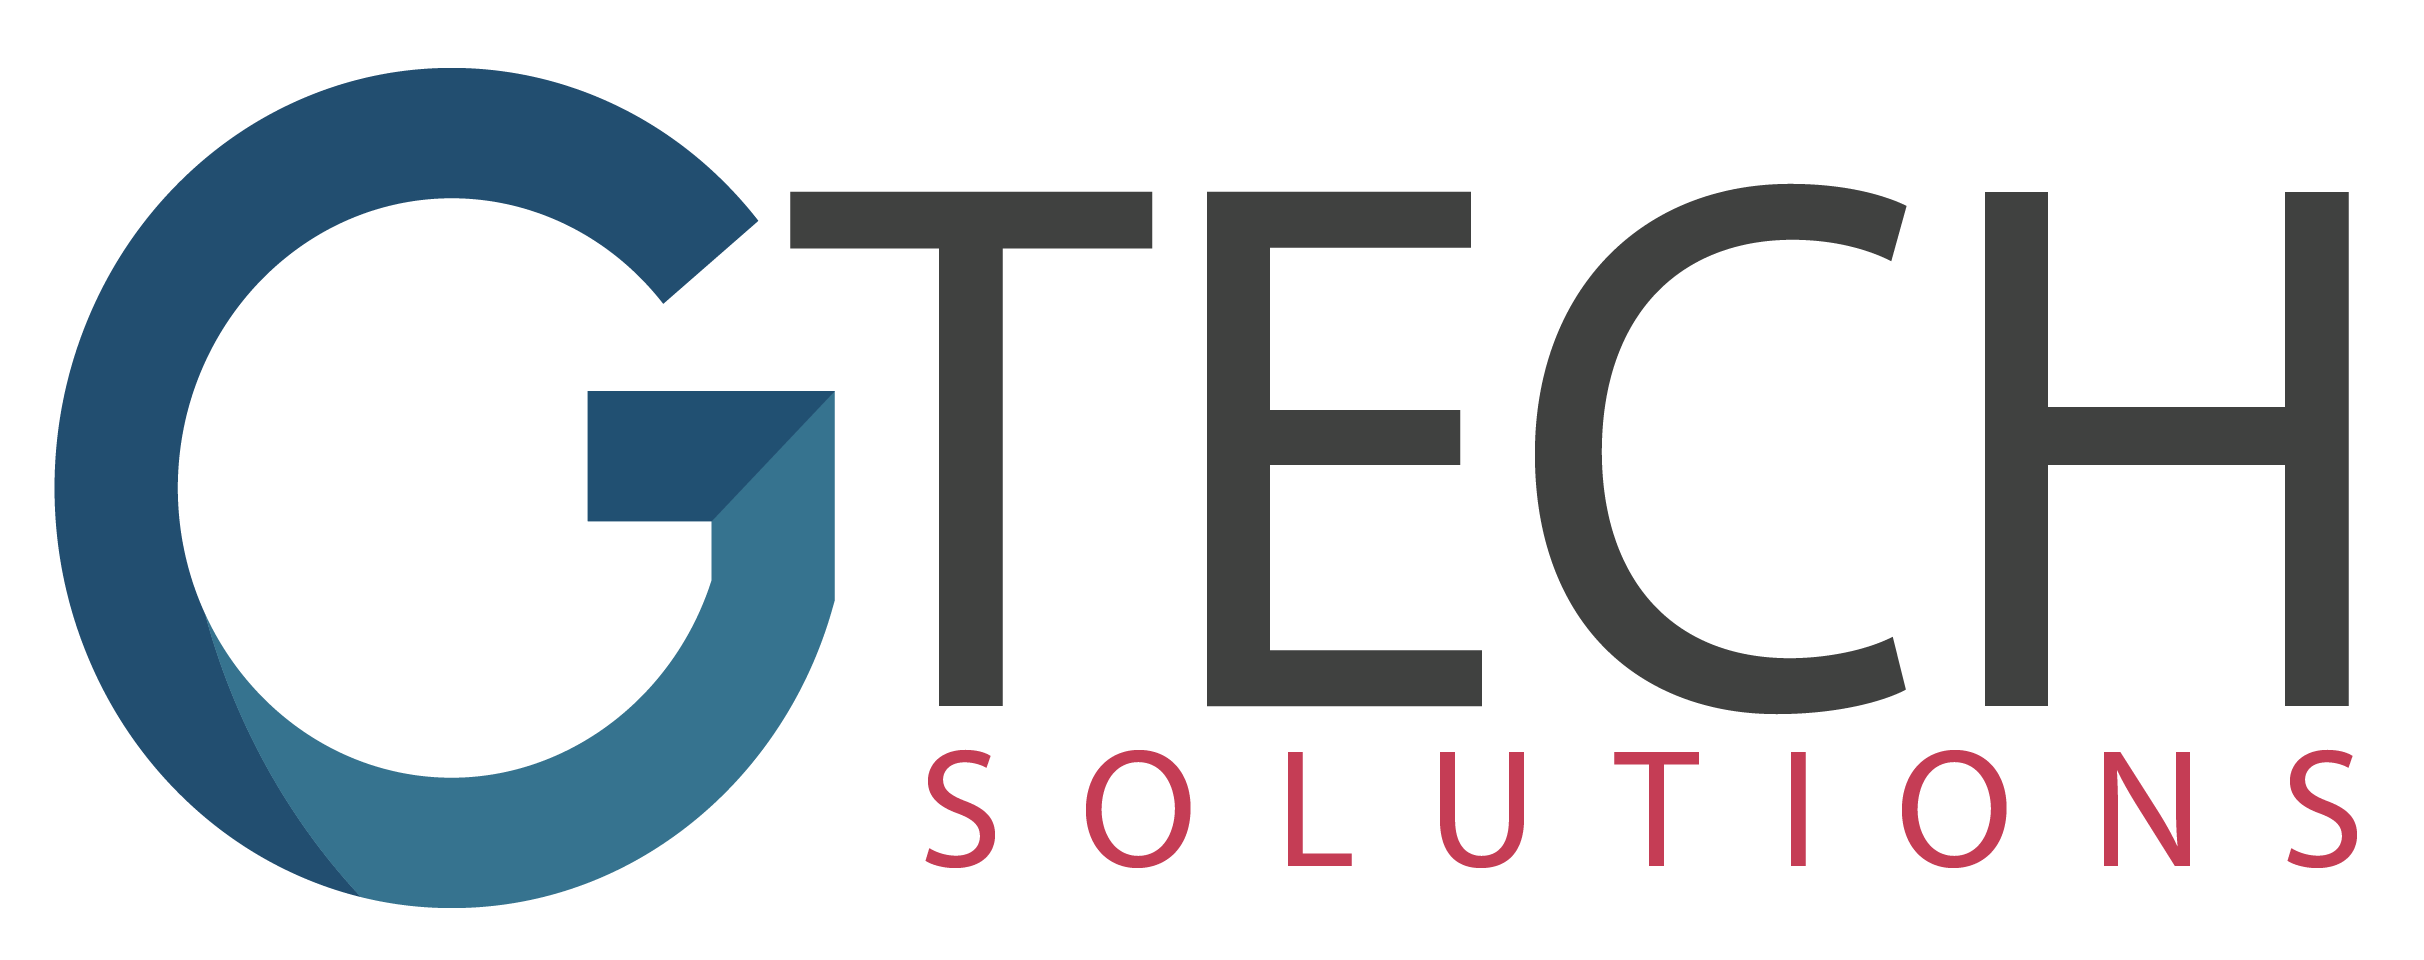 Logo G-tech Sol